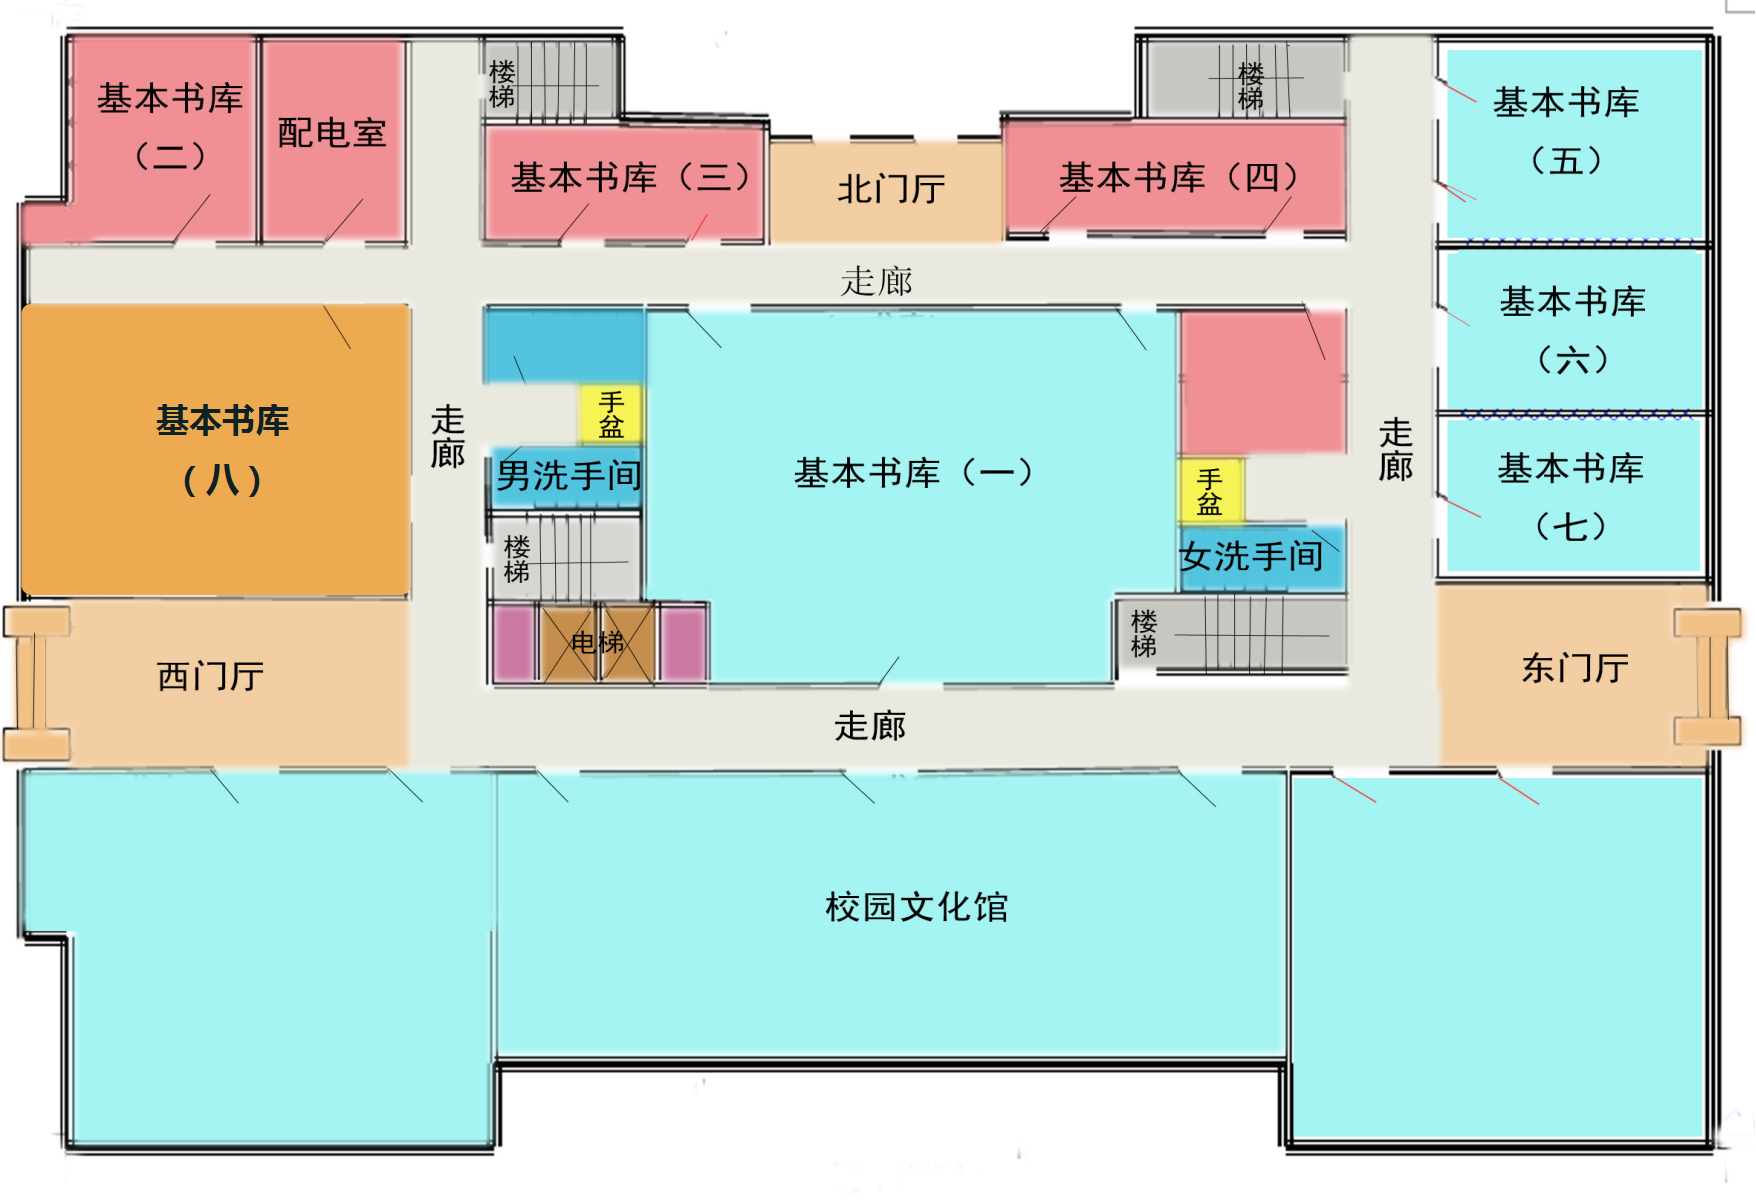 医院楼宇分布及楼层分布图 - 江苏省人民医院官方新闻 - 复禾医院库